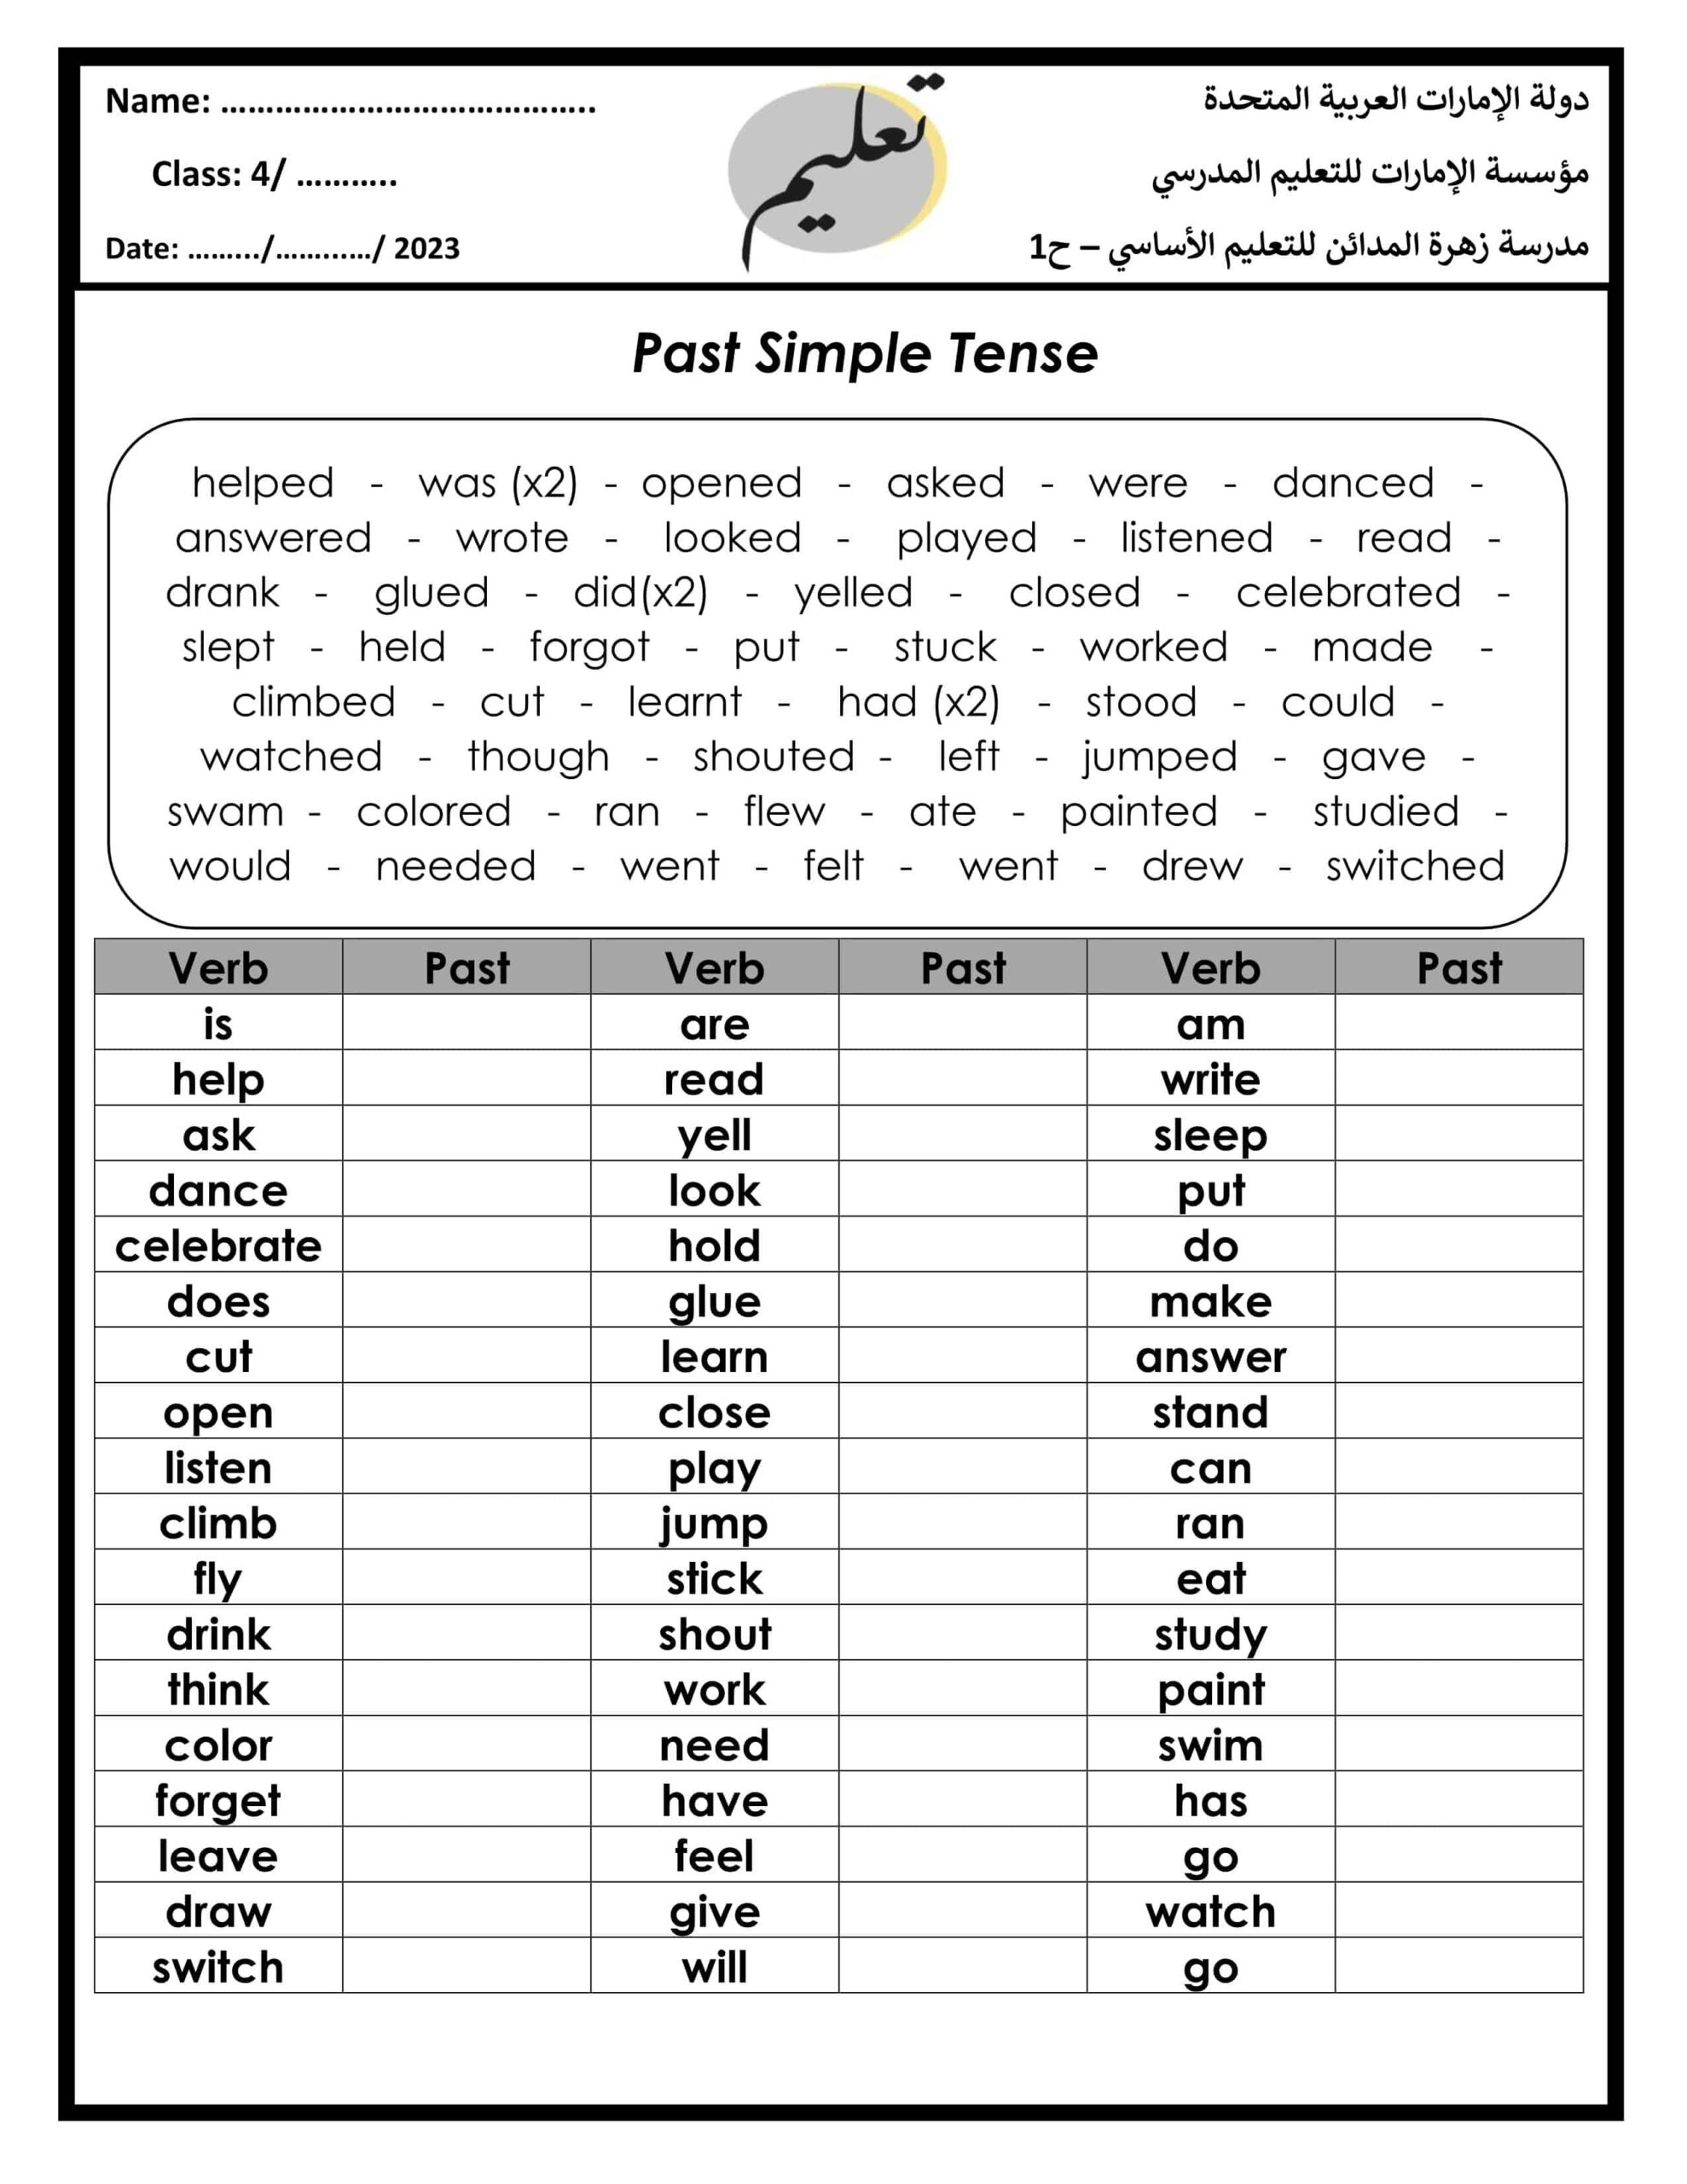 ورقة عمل Past Simple Tense اللغة الإنجليزية الصف الرابع